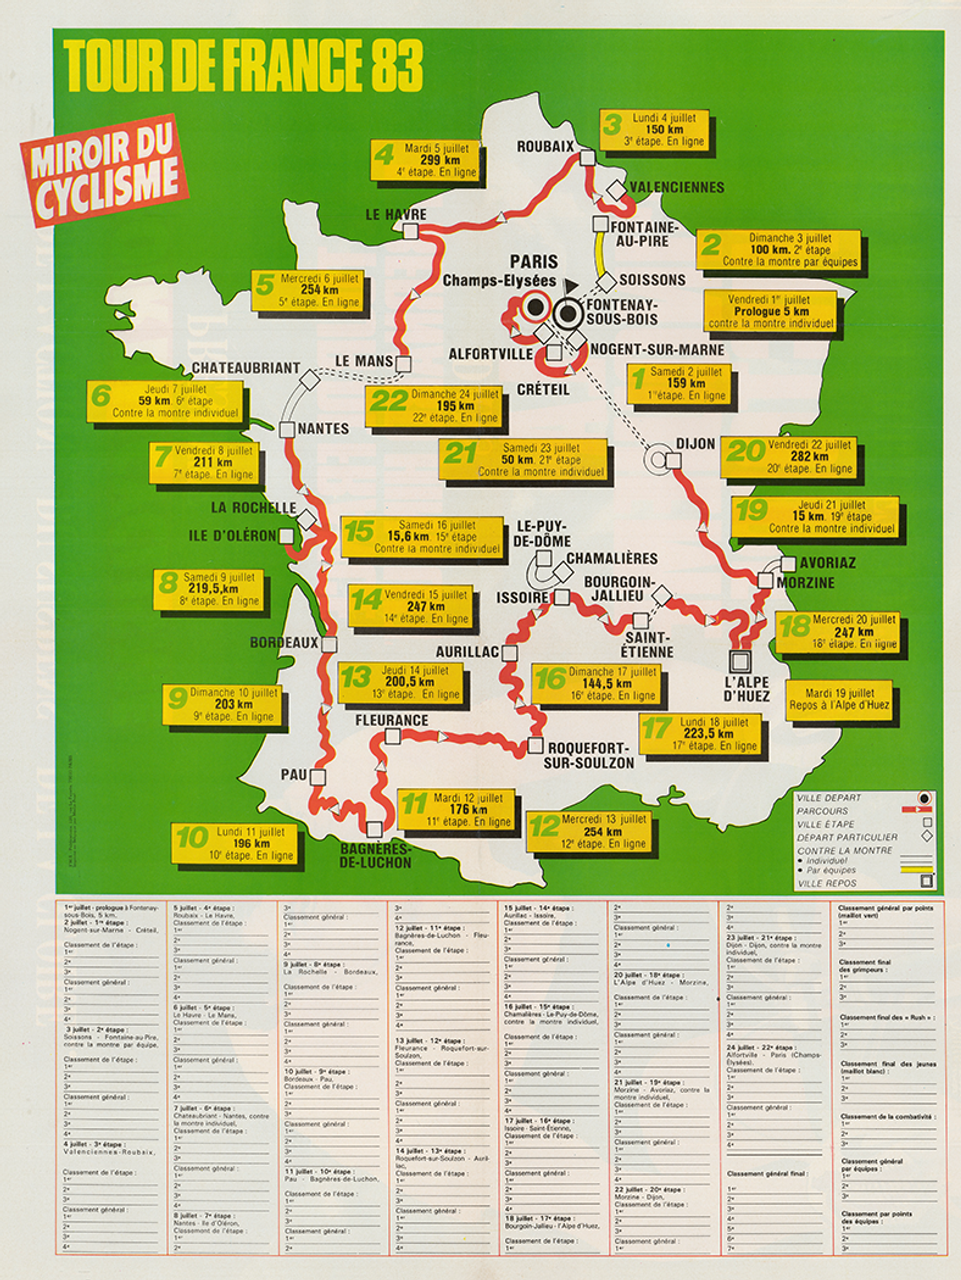 1983 Tour de France Map Poster